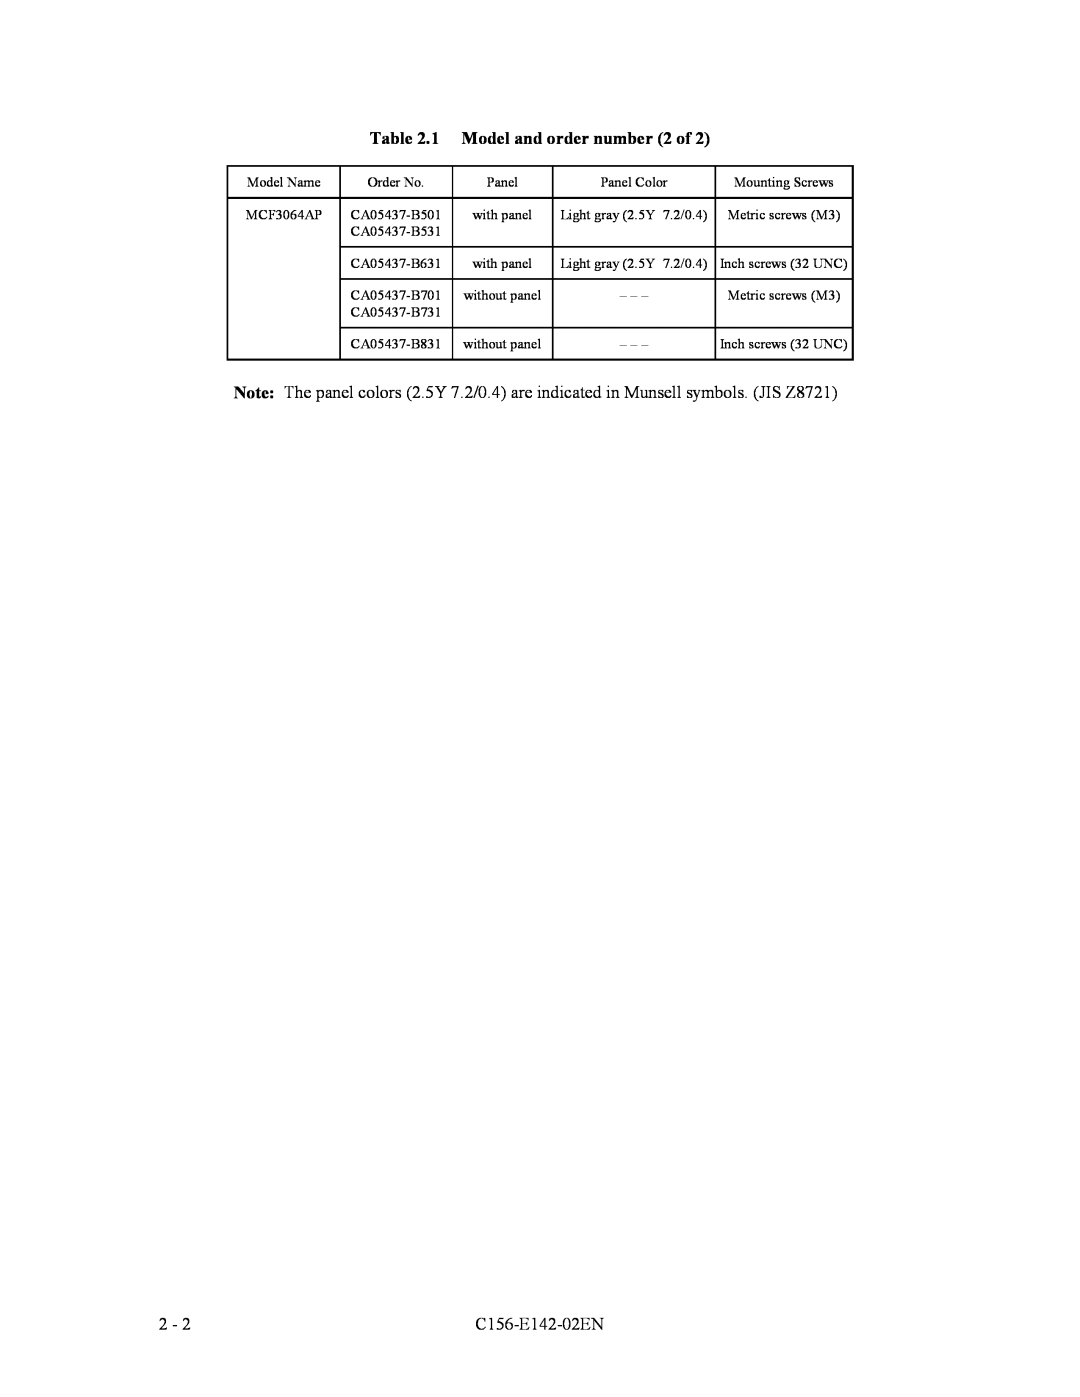 Fujitsu MCF3064AP, MCE3064AP, MCE3130AP manual 1 Model and order number 2 of, C156-E142-02EN 